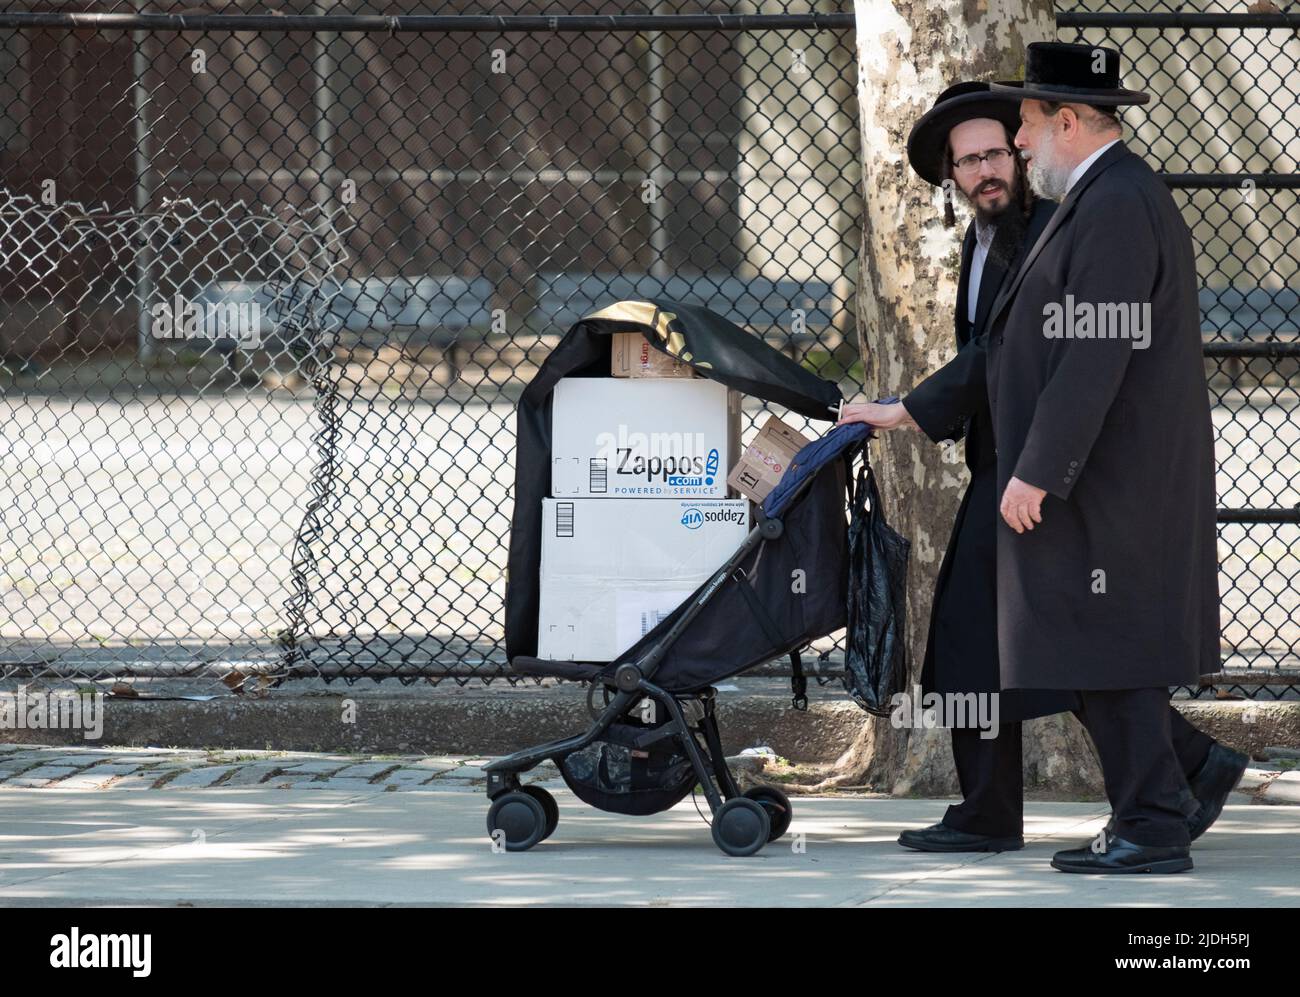 2 Hombres judíos Hasídicos, posiblemente familia, caminan por la avenida Lee usando un cochecito para llevar cajas de zapatos Zappos. En Williamsburg, Brooklyn, Nueva York. Foto de stock